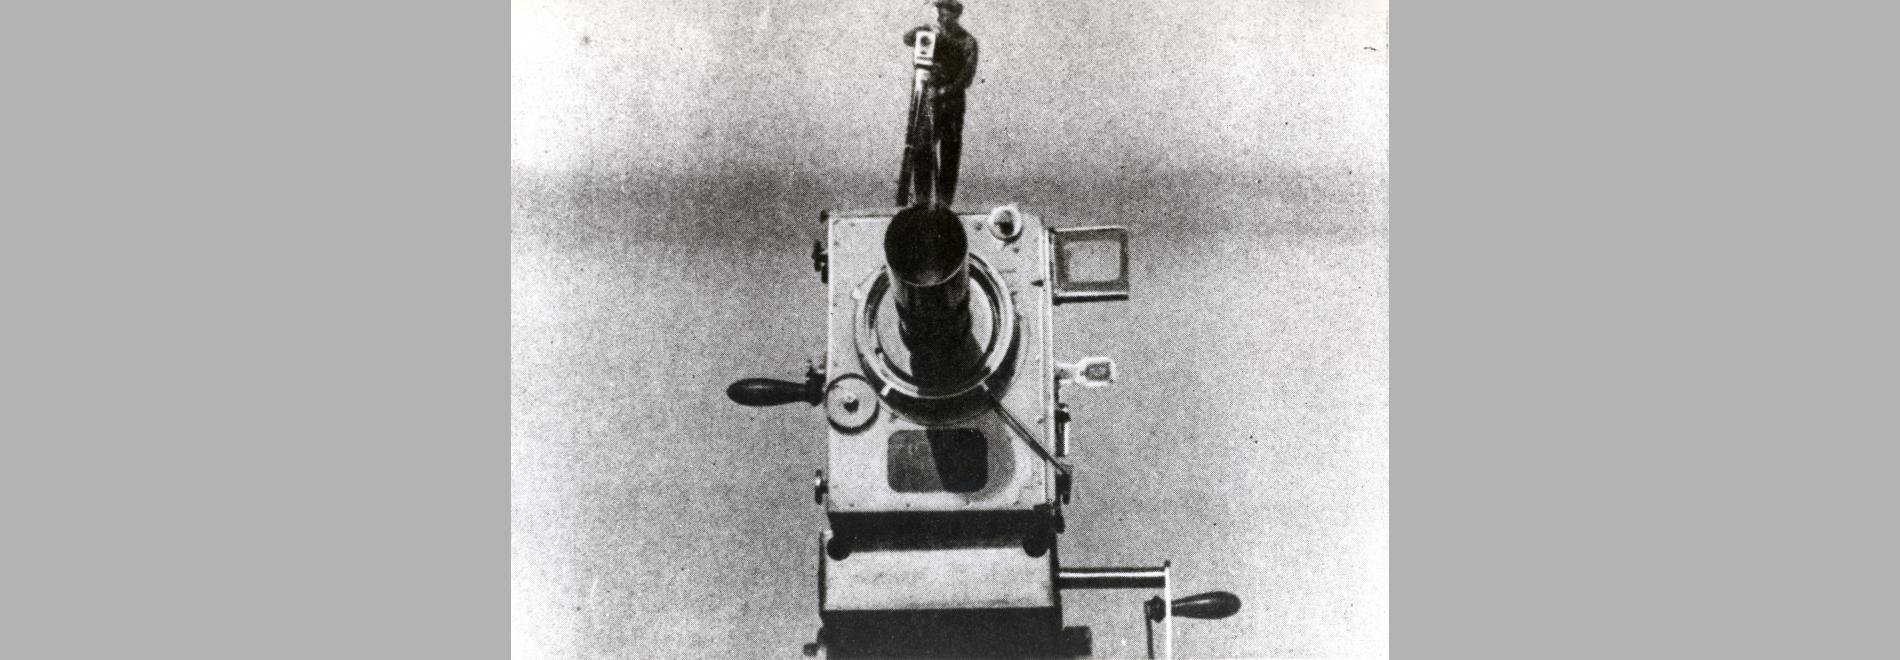 Chelovek s kino-apparatom (Dziga Vertov, 1929)